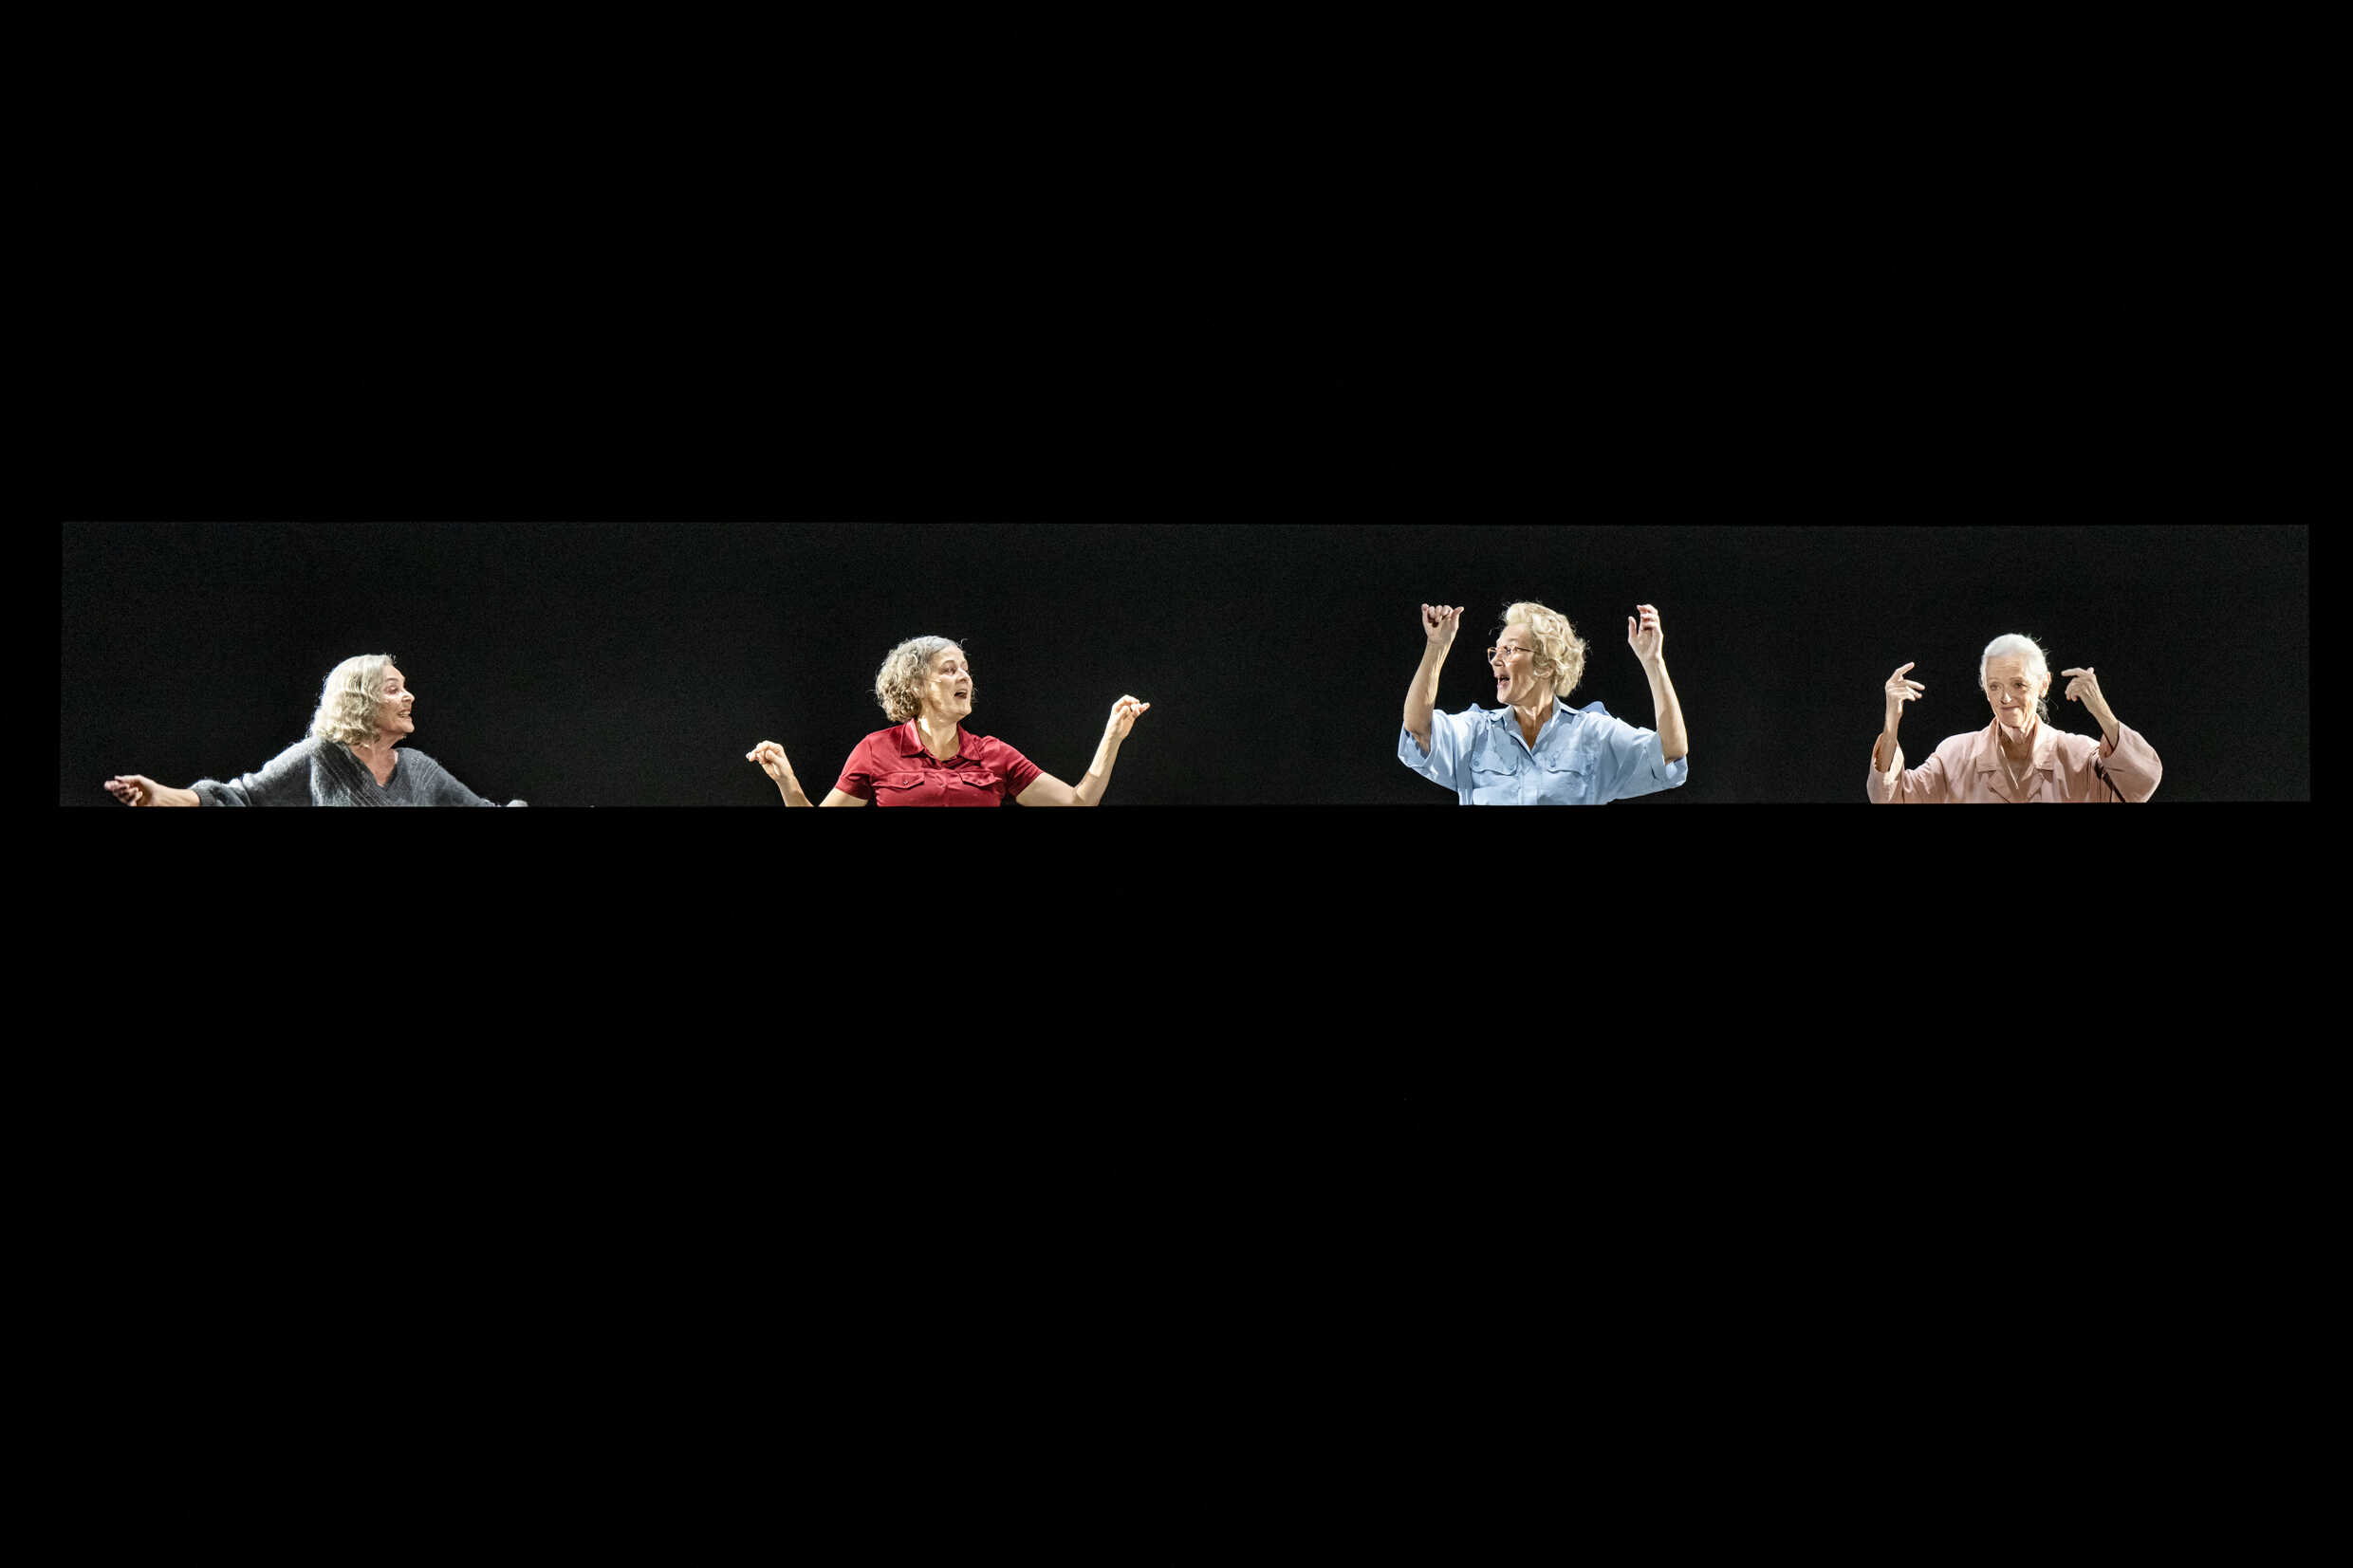 Chatarina Larsson, Monica Stenbeck, Eva Millberg, Eva Ahlberg i Undkom ensam. Sverigepremiär 2 september på Stora scenen, Kulturhuset Stadsteatern.